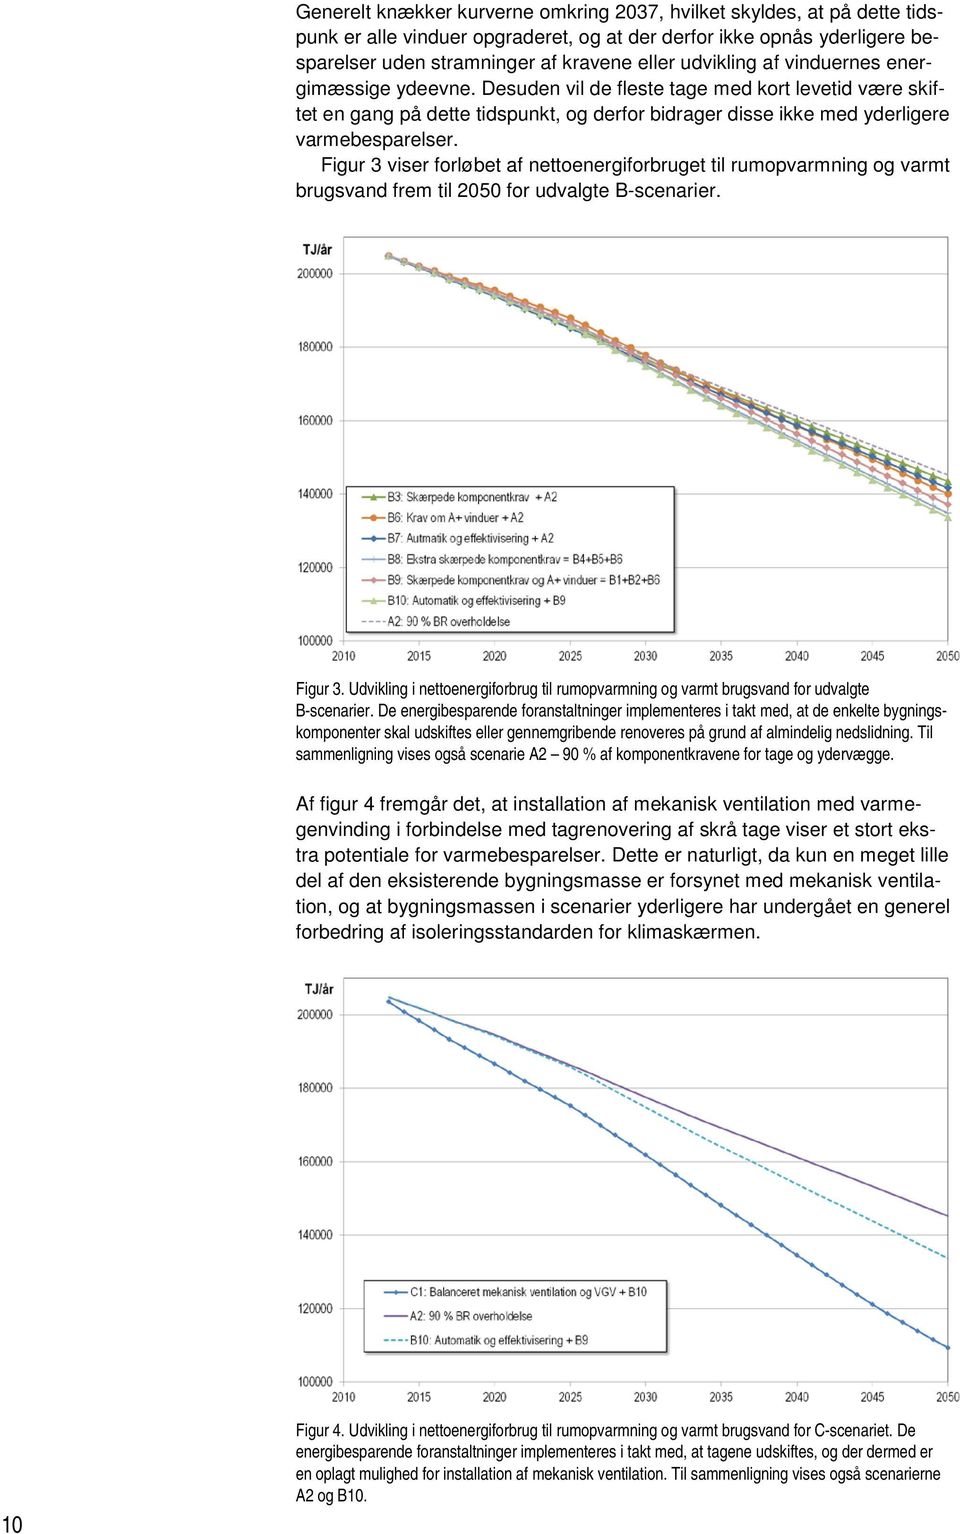 Figur 3 viser forløbet af nettoenergiforbruget til rumopvarmning og varmt brugsvand frem til 2050 for udvalgte B-scenarier. Figur 3.